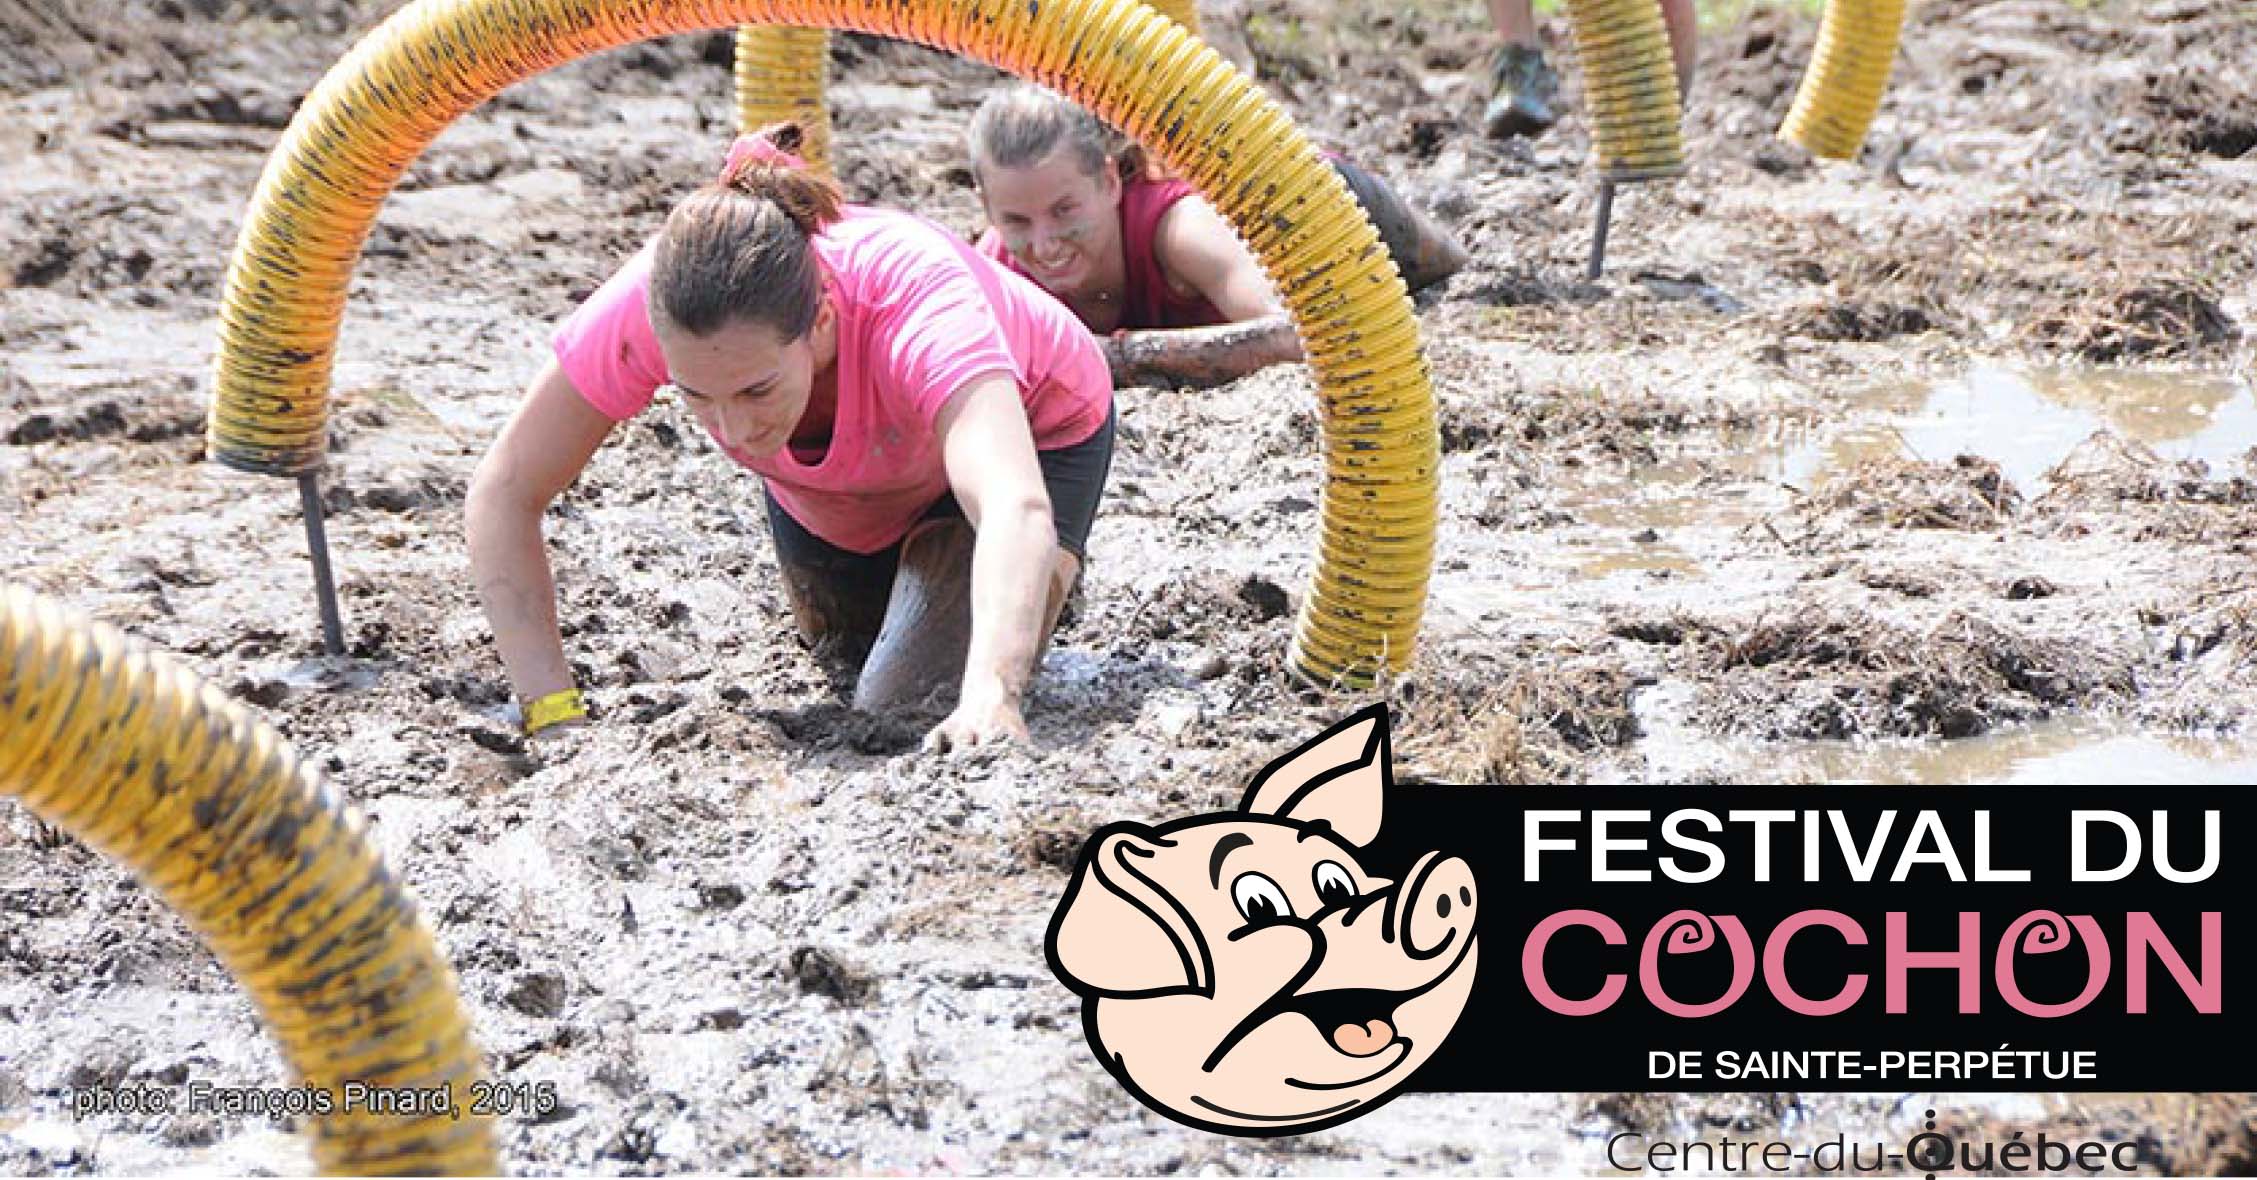 Festival du cochon - 5km dans la boue - Ste-Perpétue